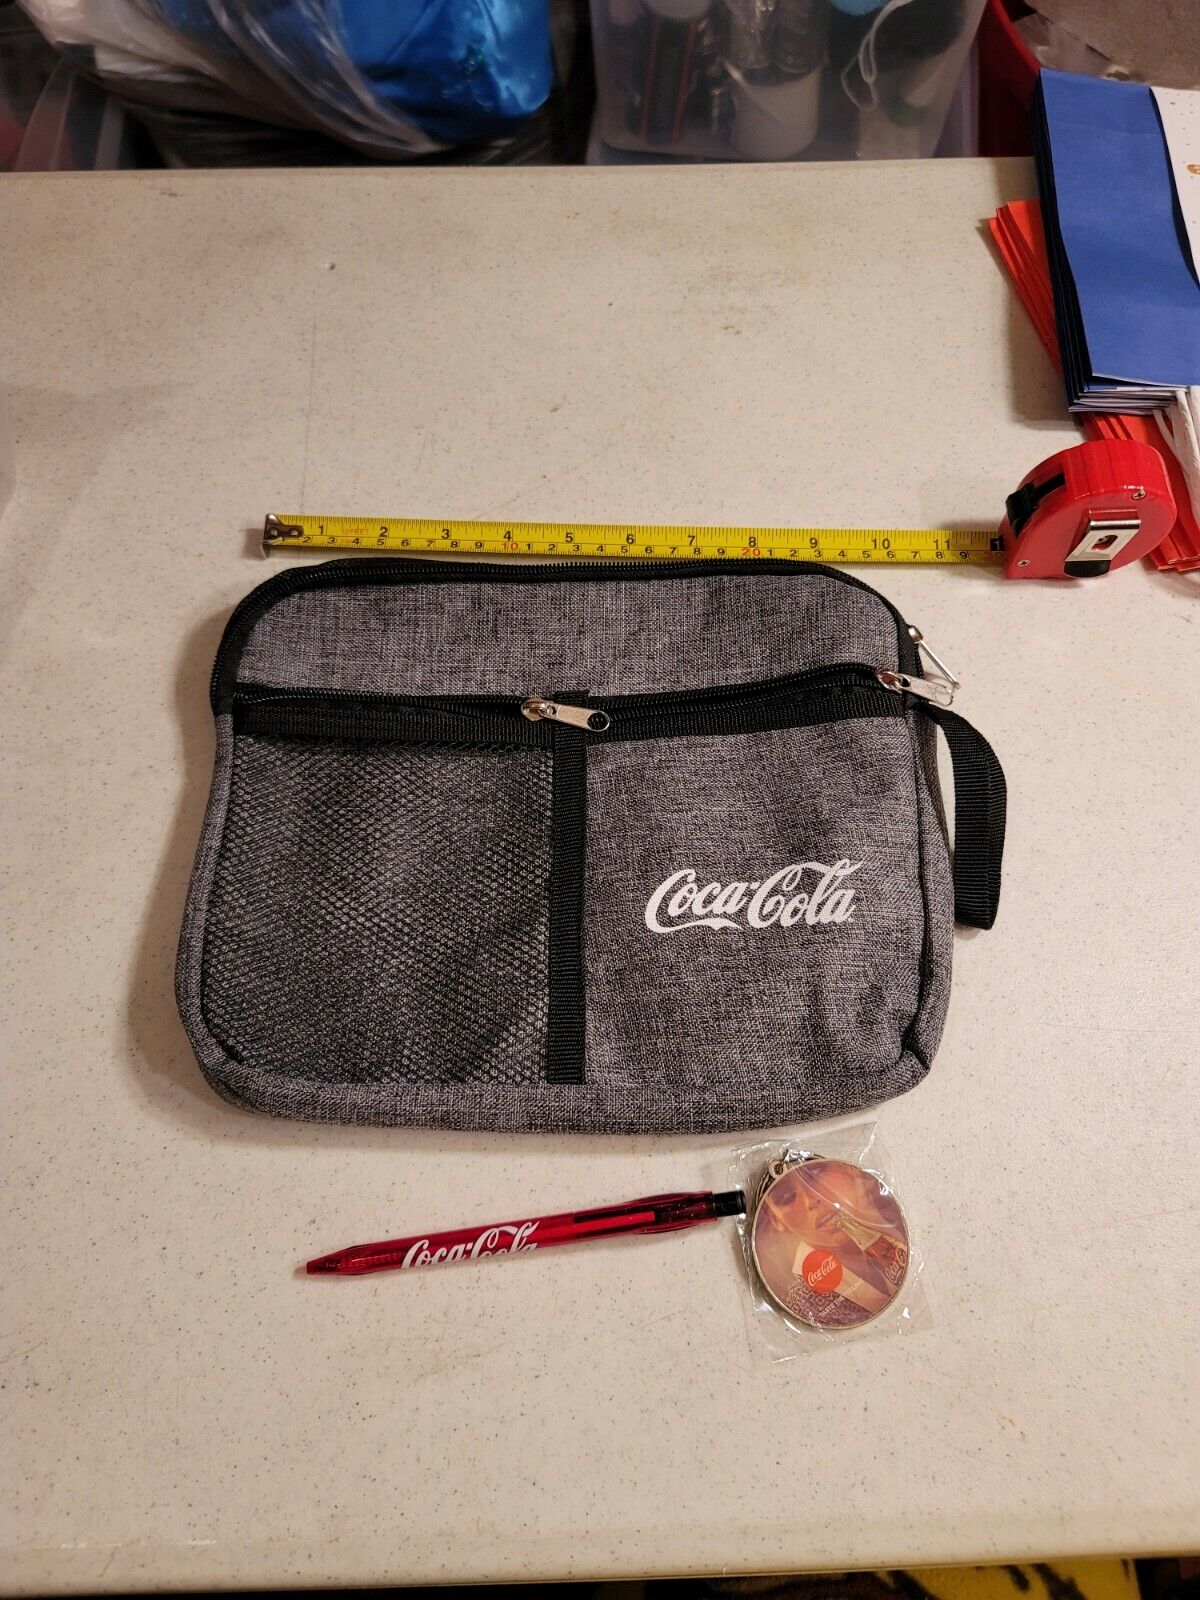 11" Coca Cola Small Wrist Strap Bag With Retractable Pen And Coca Cola Key Chain